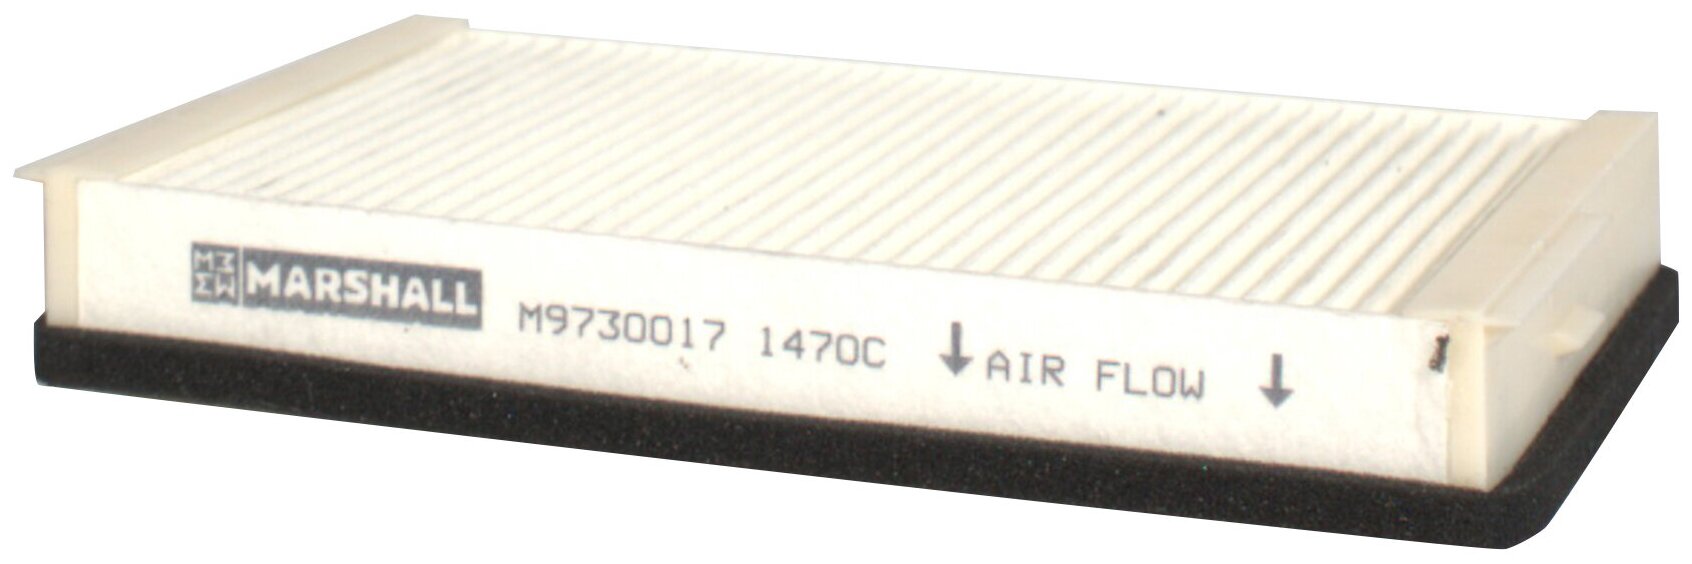 Фильтр воздушный кабины DAF CF65/75/85 (M9730017)